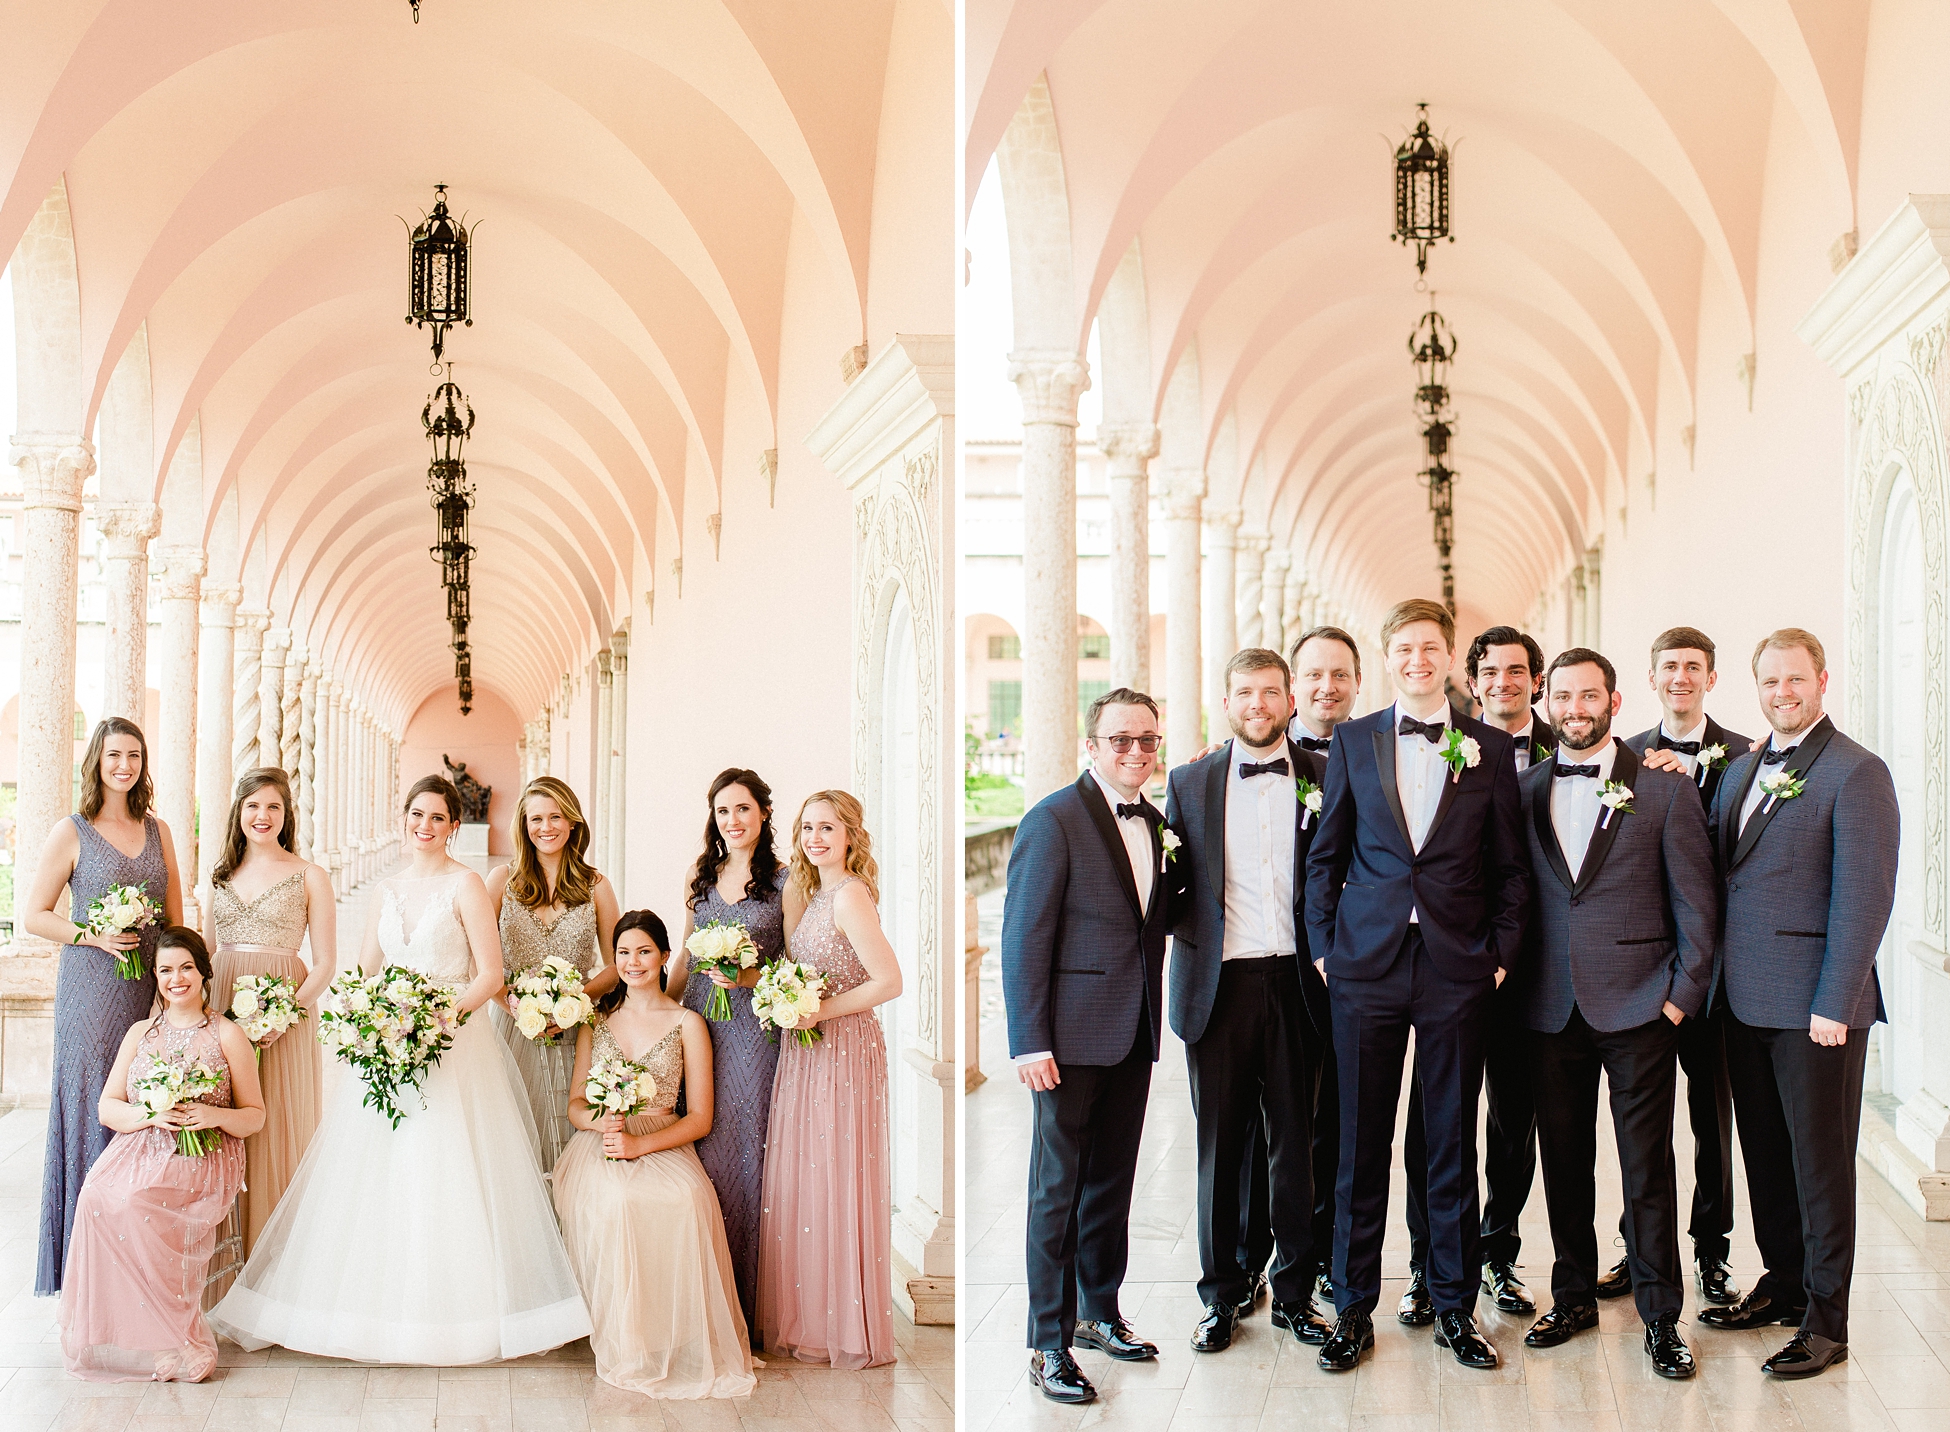 Powel Crosley Wedding | © Ailyn LaTorre Photography 2019